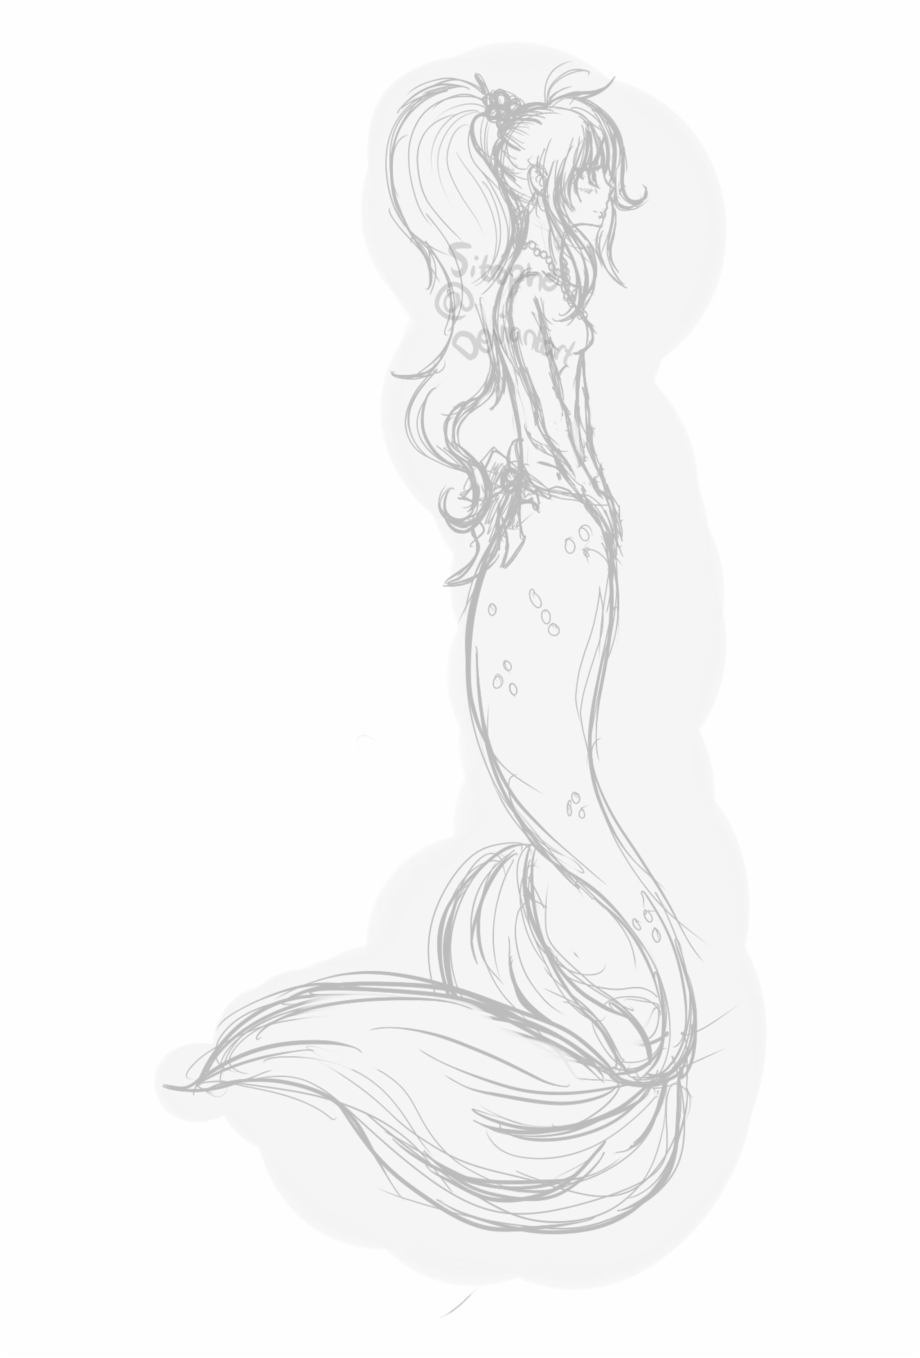 drawings 20  vixs mermaid form  Wattpad